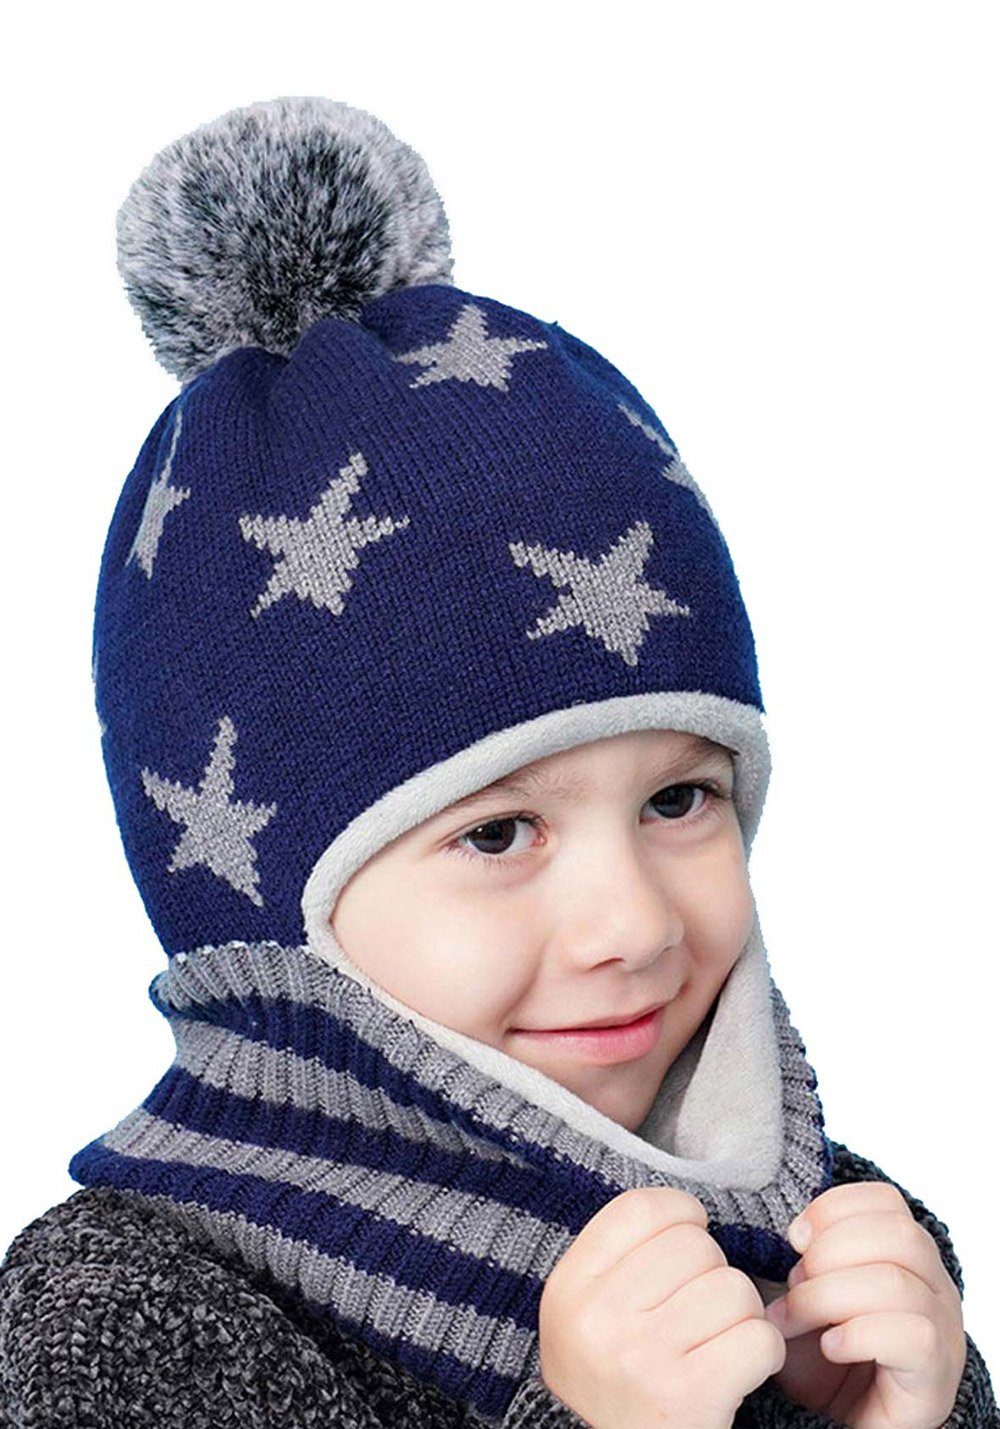 Vivi Idee Schlupfmütze Kinder Schalmützen Balaclava Wollmütze Strickmütze  Wintermütze für Kinder ab 4 Jahre Jungen | Ohrenmützen